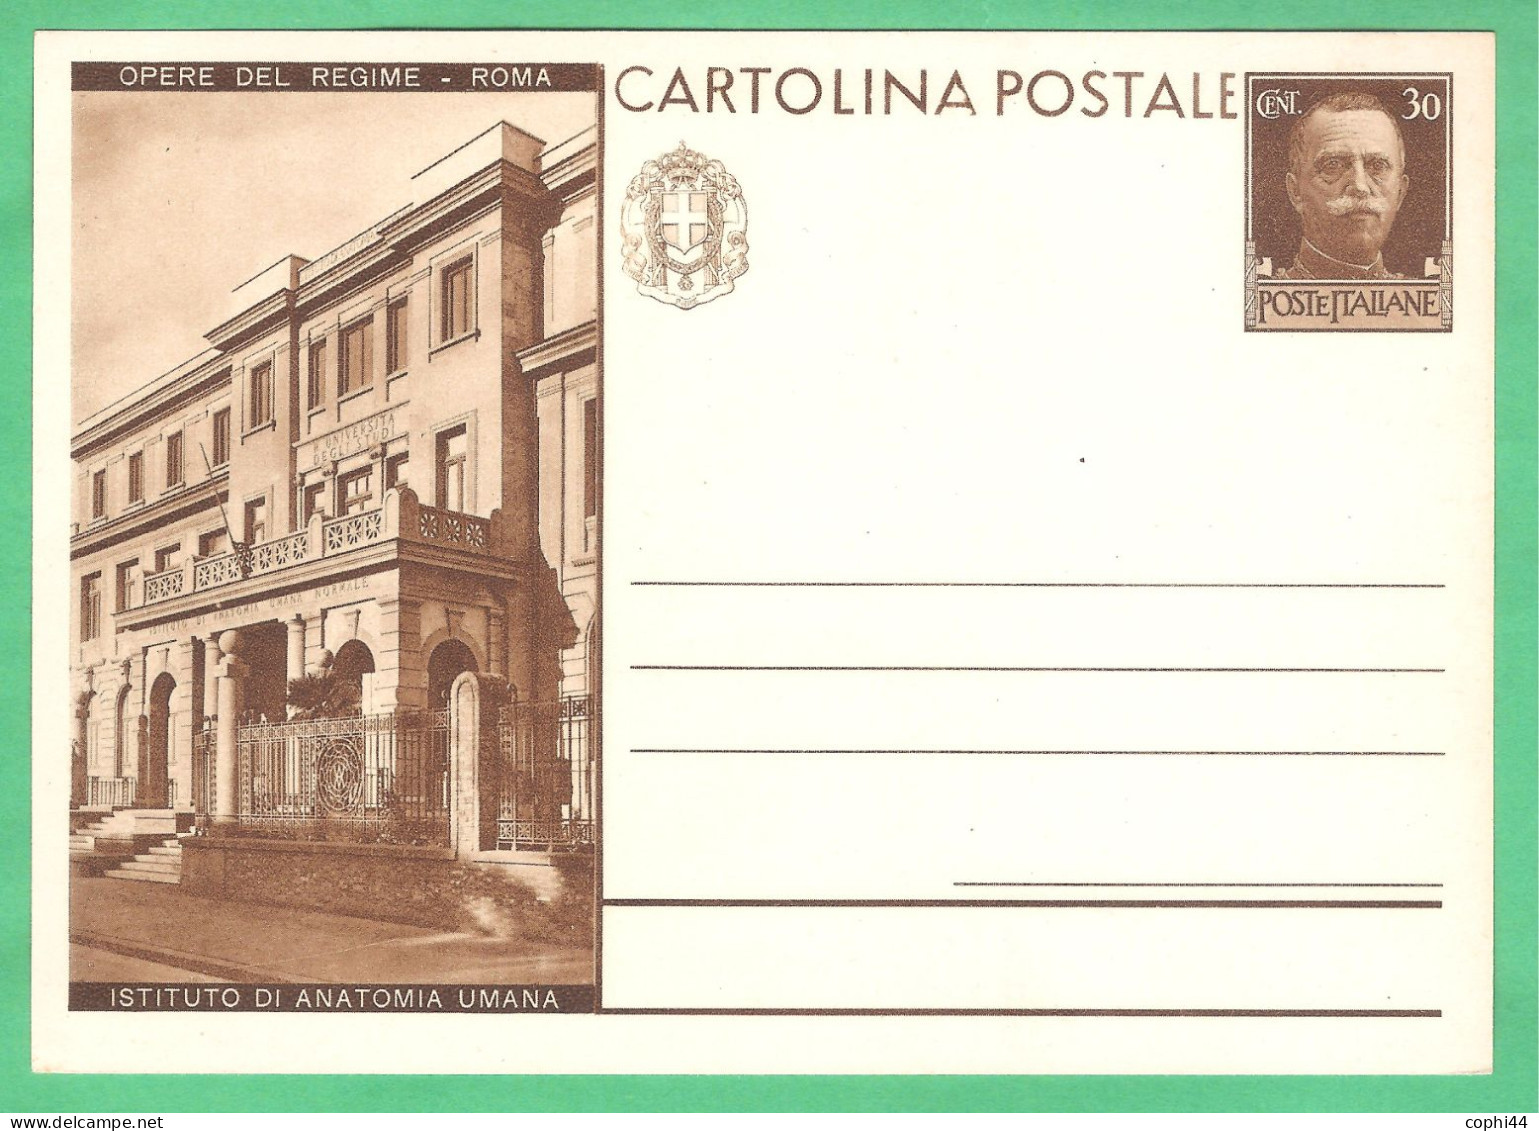 REGNO D'ITALIA 1931 CARTOLINA POSTALE VEIII OPERE DEL REGIME ISTITUTO DI ANATOMIA UM. 30c Bruno (FILAGRANO C70-10) NUOVA - Ganzsachen